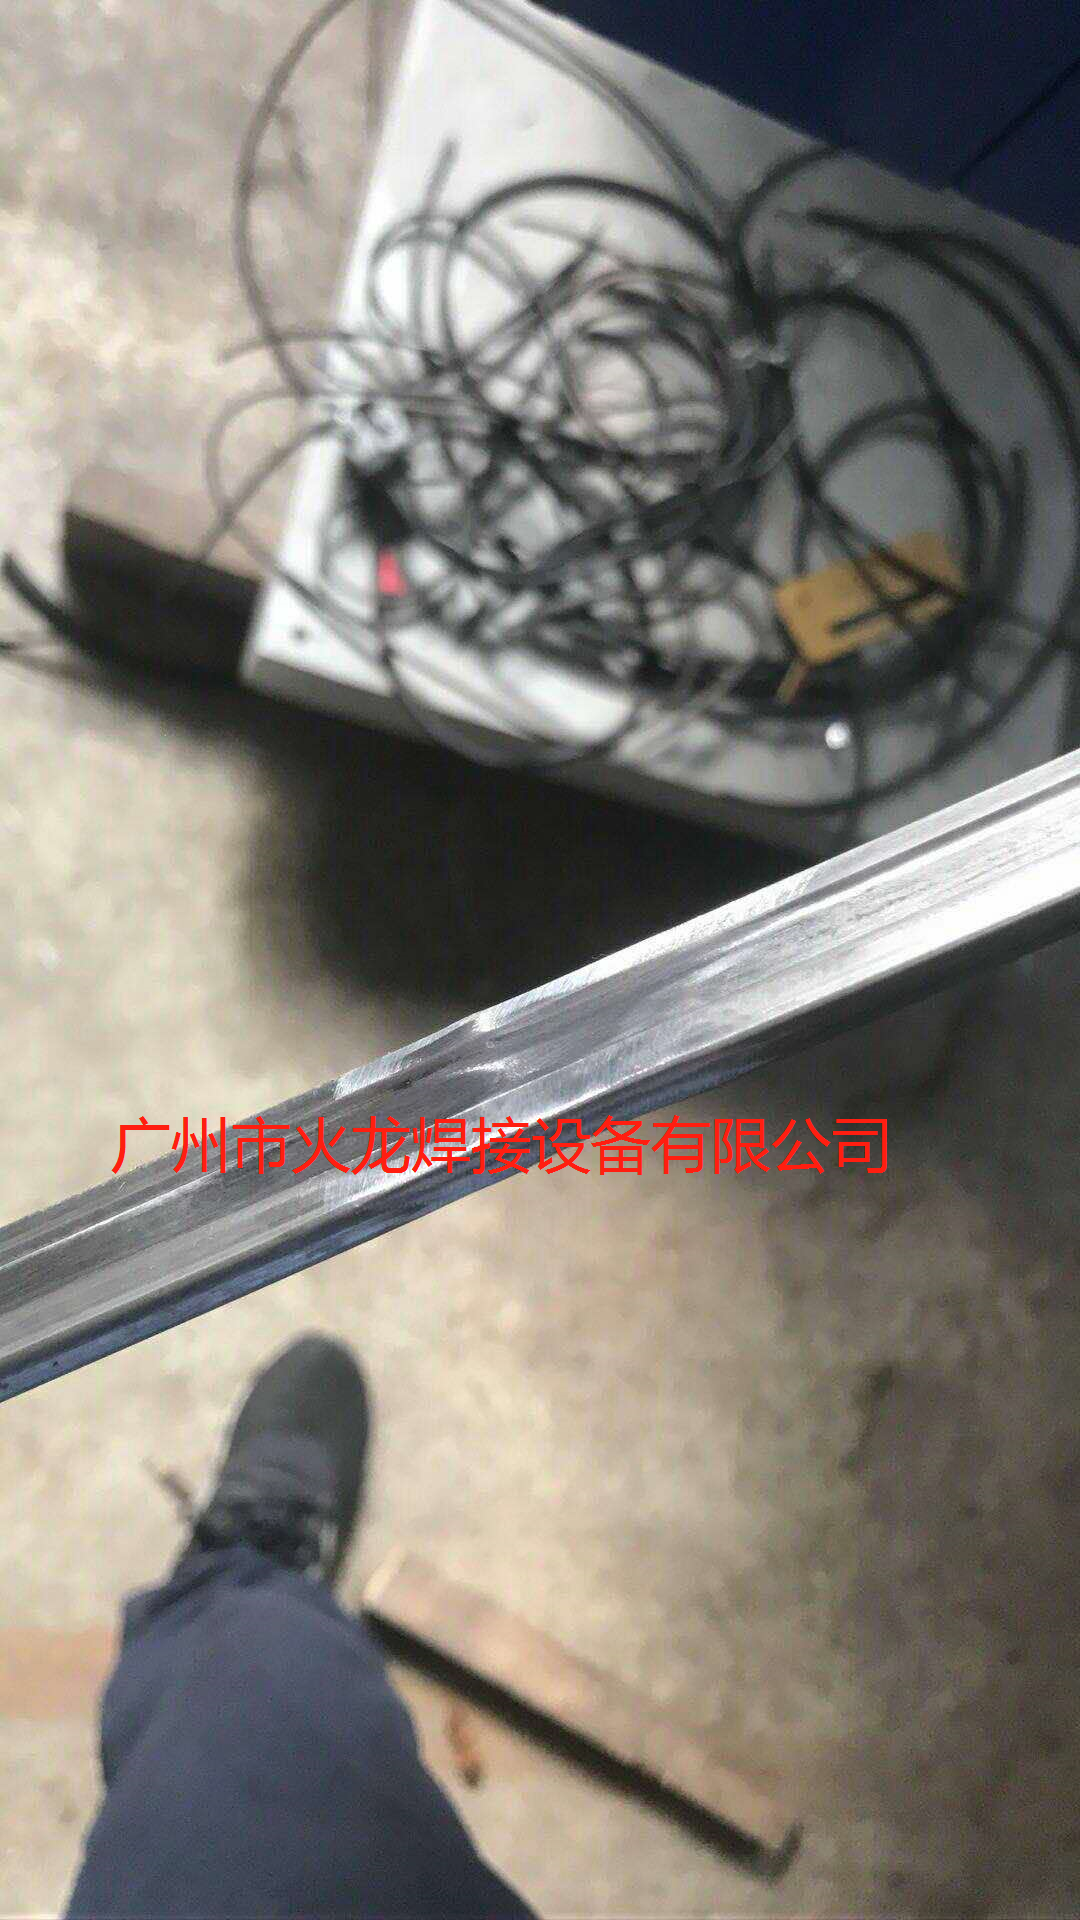 扁铁飞碟拉篮线材对焊机